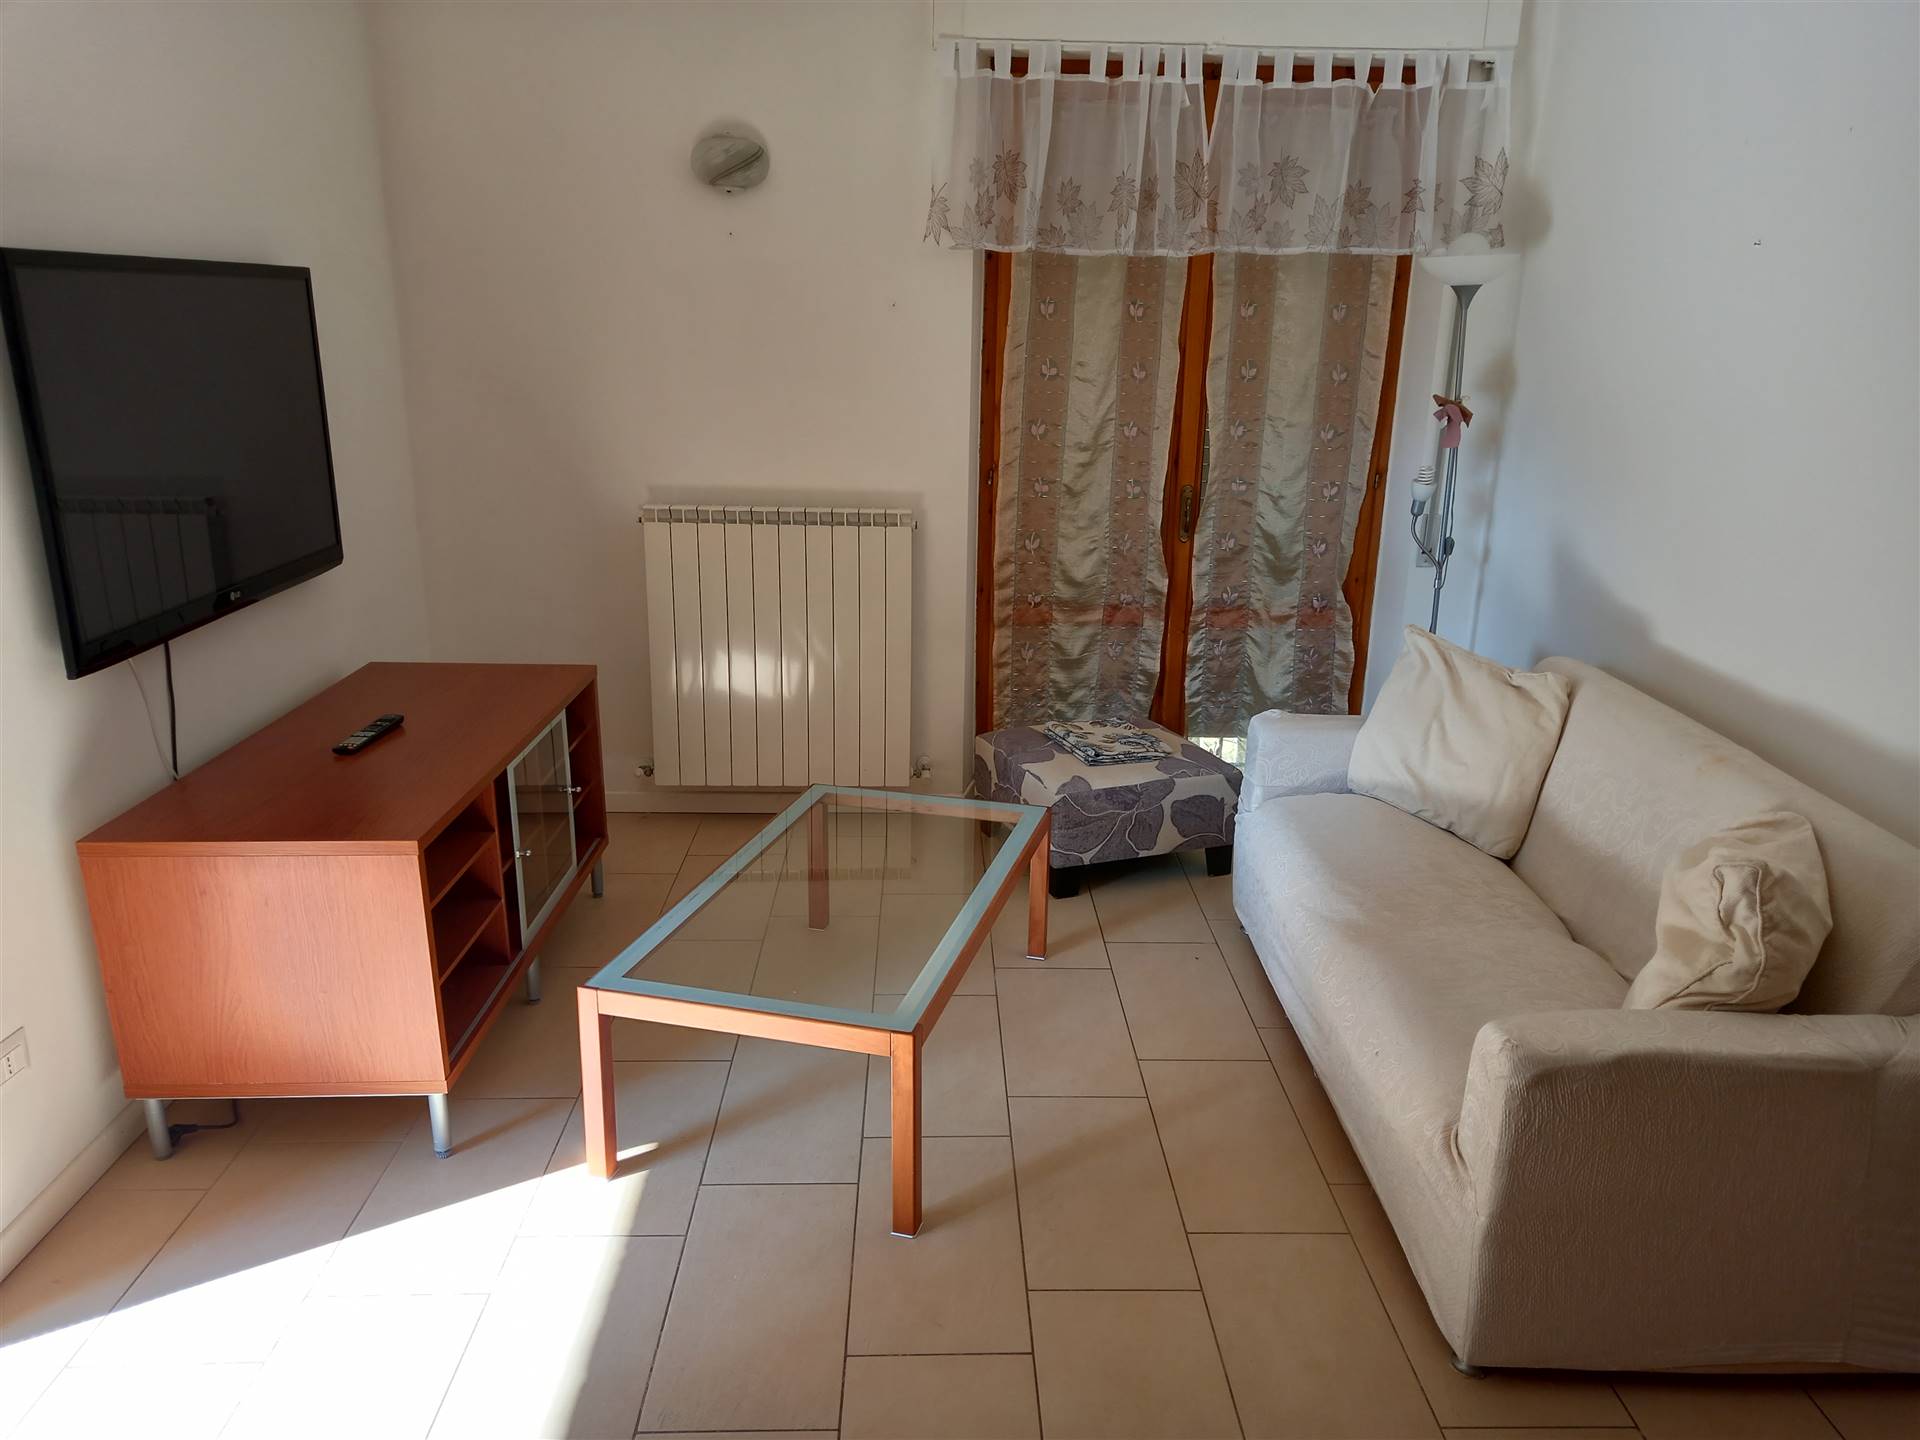 Appartamento in vendita a Castelplanio, 3 locali, zona ne, prezzo € 79.000 | PortaleAgenzieImmobiliari.it